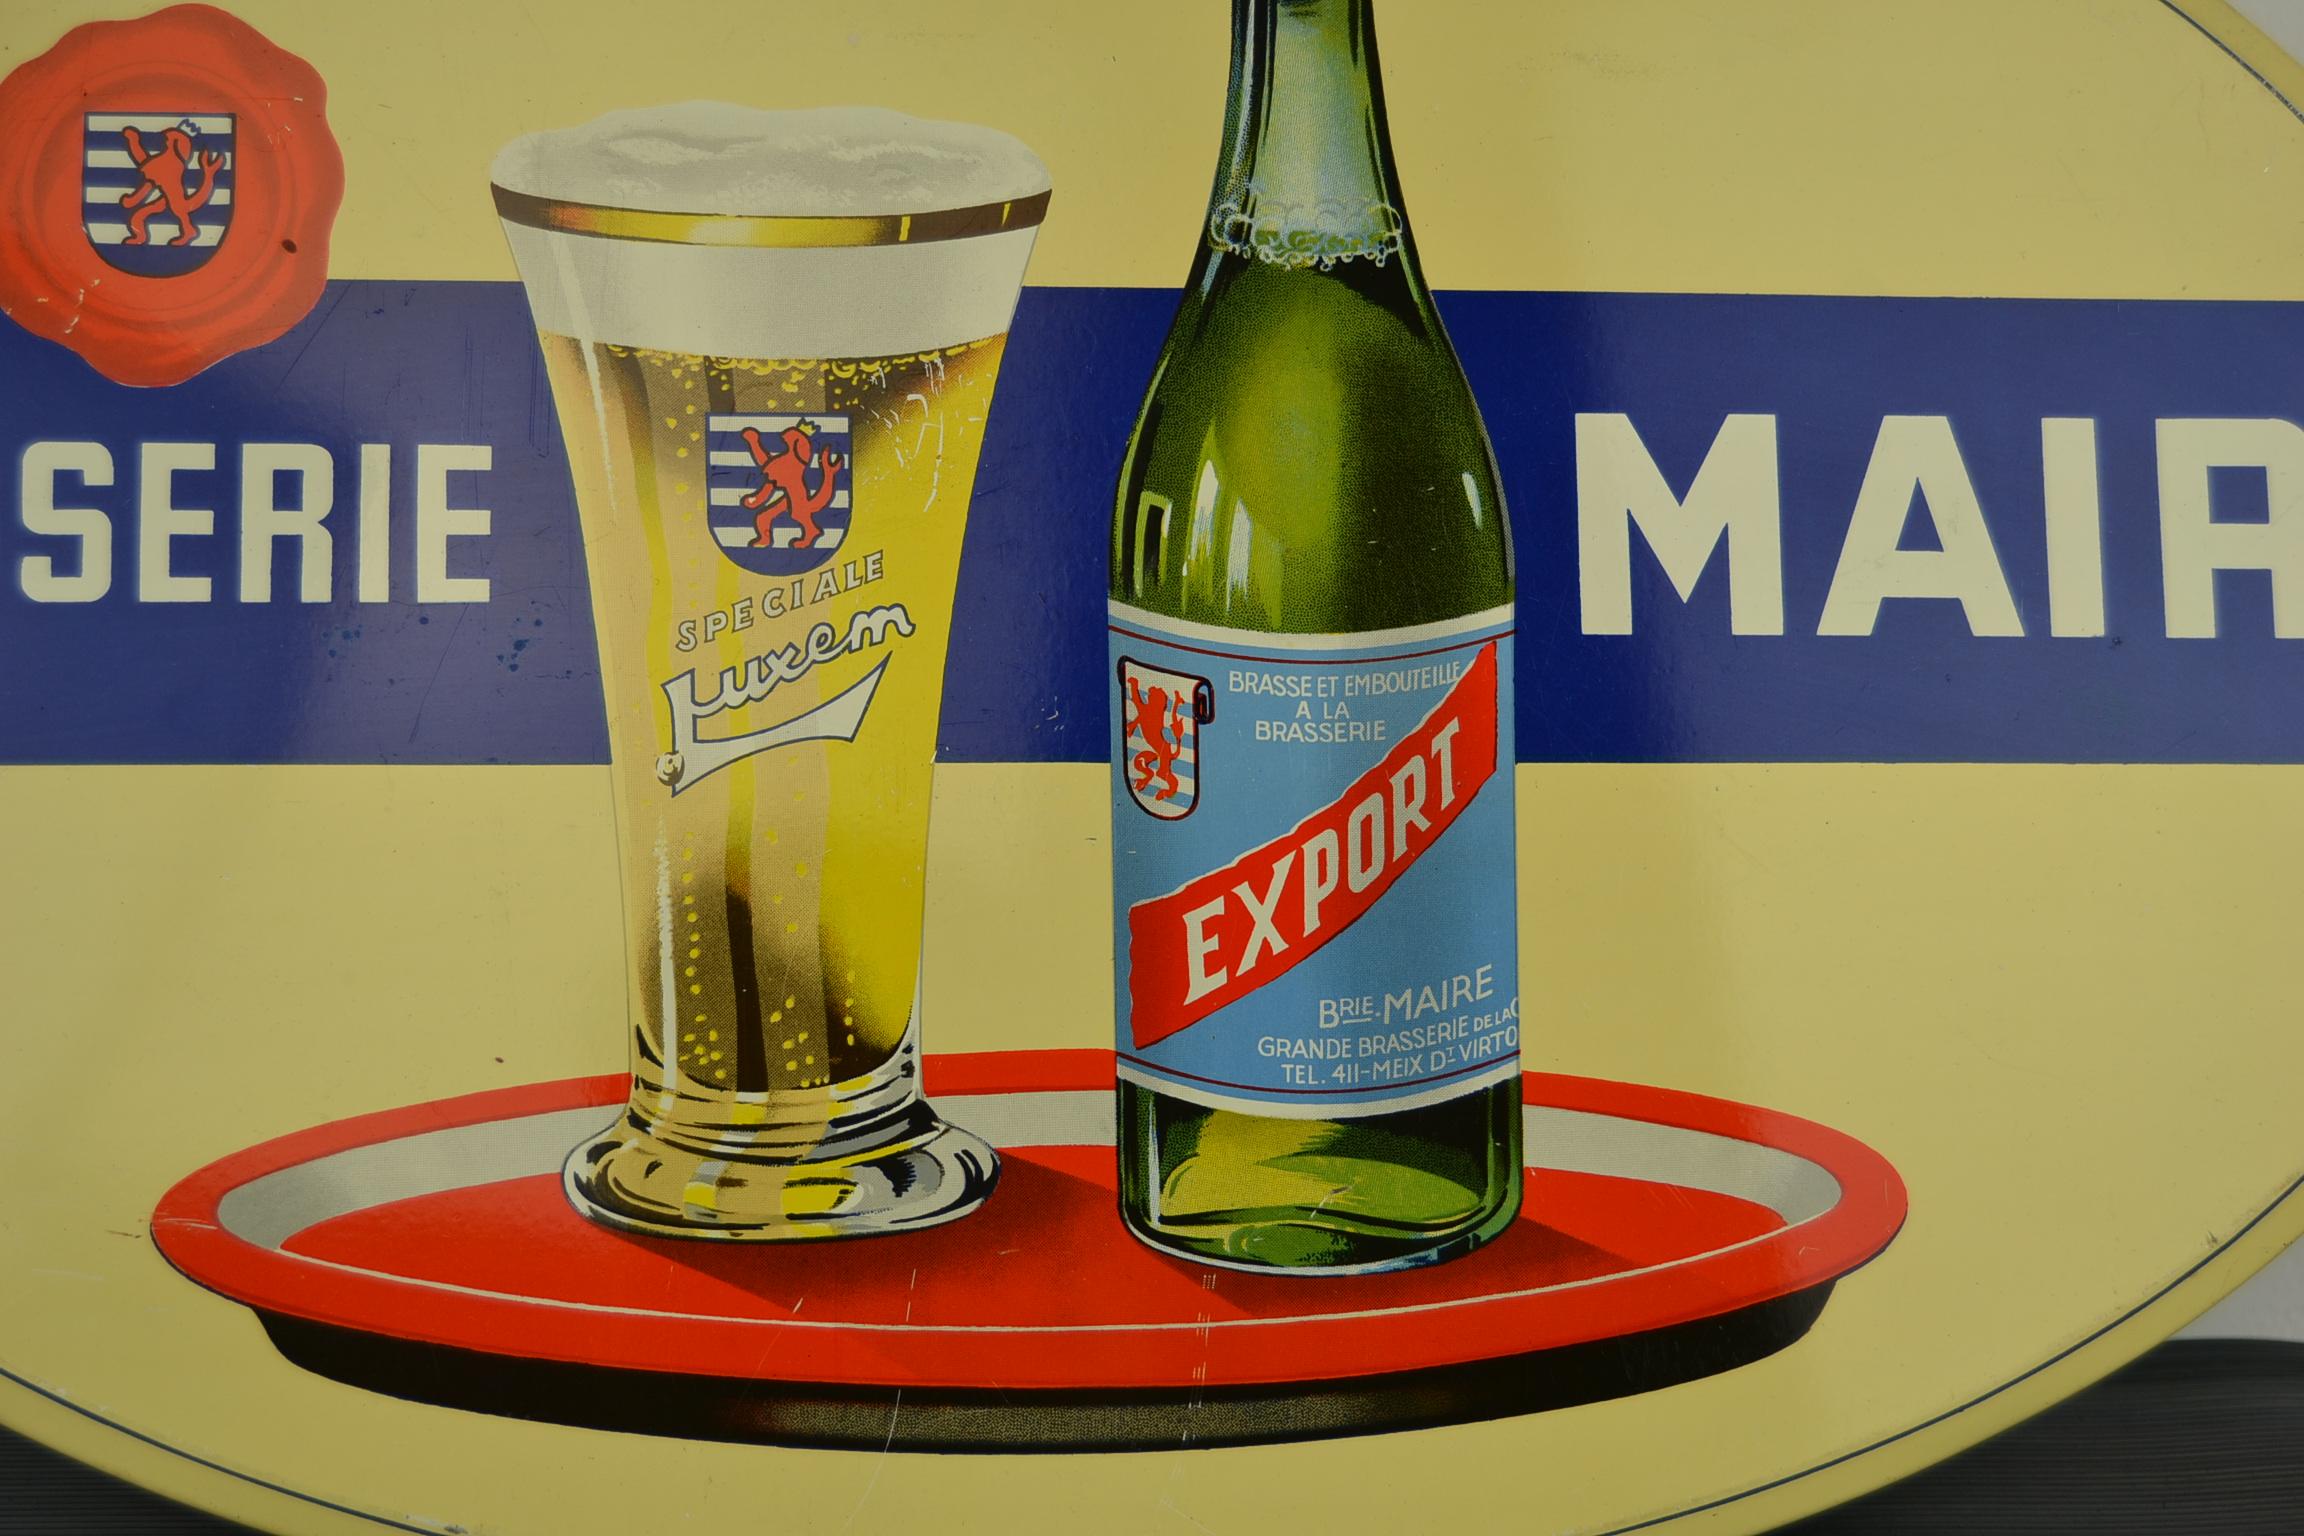 1950er Jahre Zinn-Werbeschild für belgisches Bier: 
Brasserie Maire - Speciale Luxem - Export Bier.
Ein Werbeschild mit einem tollen Design für blondes Bier:  eine Bierflasche und ein Bierglas auf einem Porzellantablett. 

Dieses ovale Schild wurde